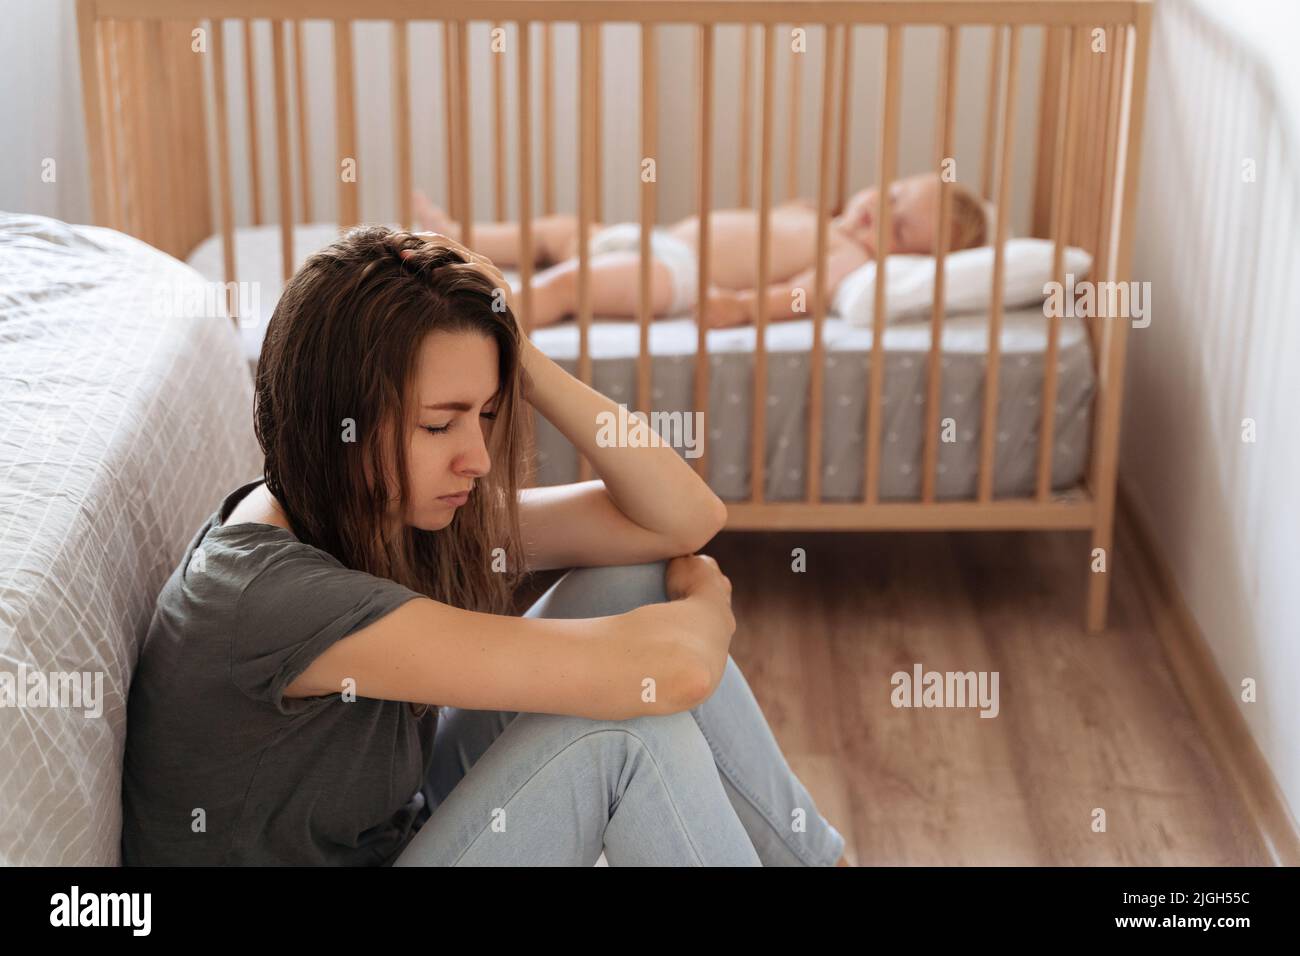 Junge, müde Mutter, die an postnataler Depression leidet, sitzt auf dem Boden neben dem schlafenden Baby in der Krippe mit geschlossenen Augen. Fühlen Sie sich erschöpft depressiv und fordern psychologische Hilfe und Unterstützung Stockfoto